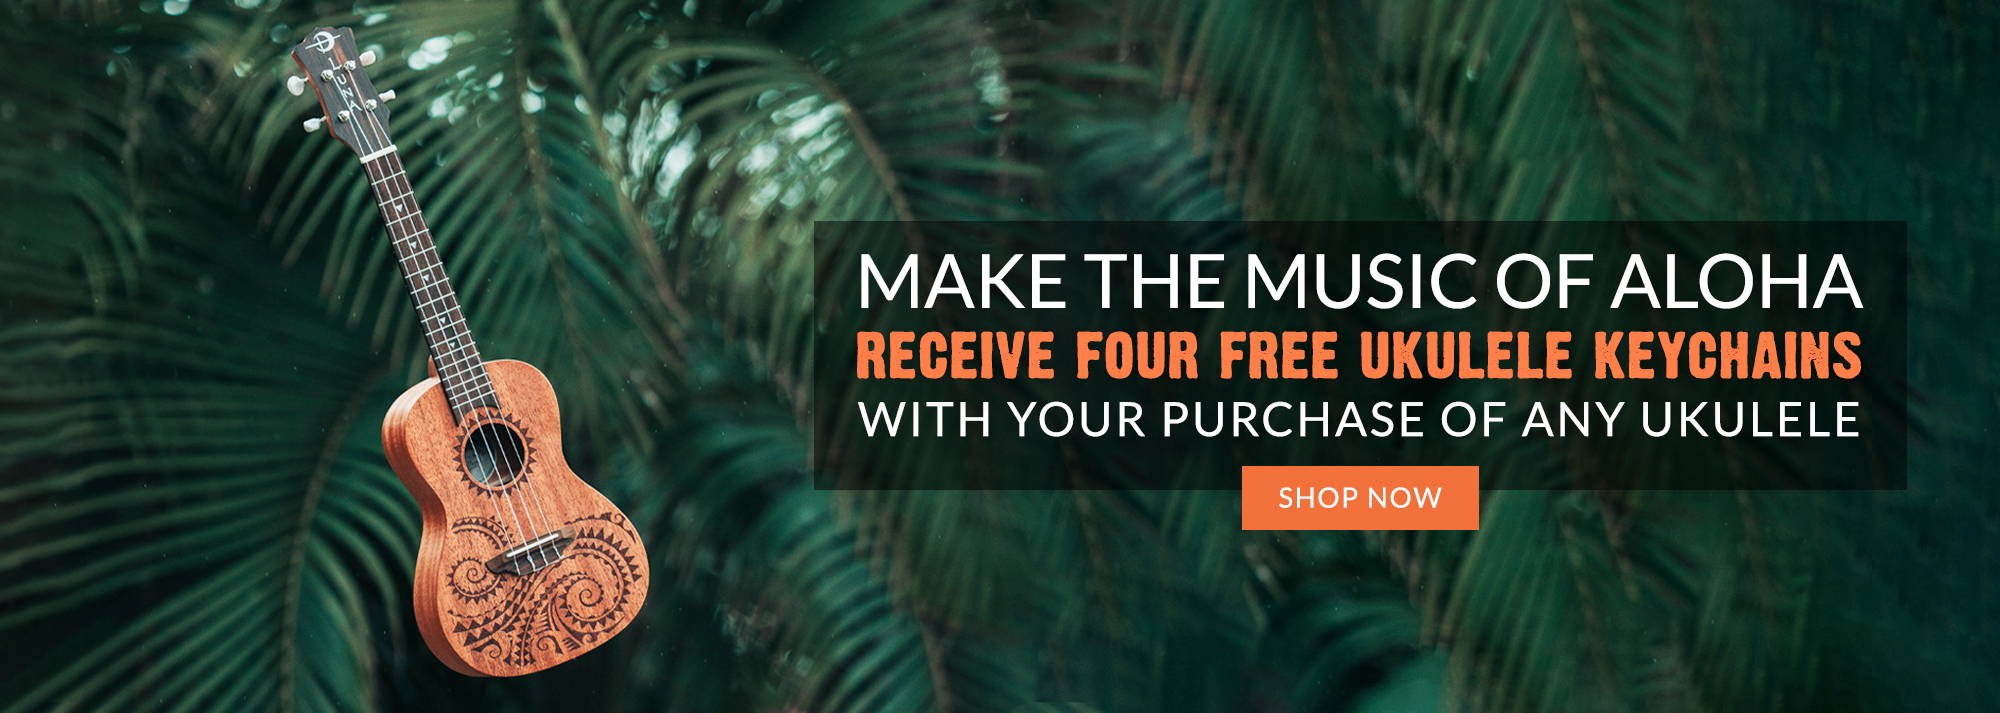 Make the music of Aloha
Receive four Free Ukulele Keychains
With your purchase of any ukulele